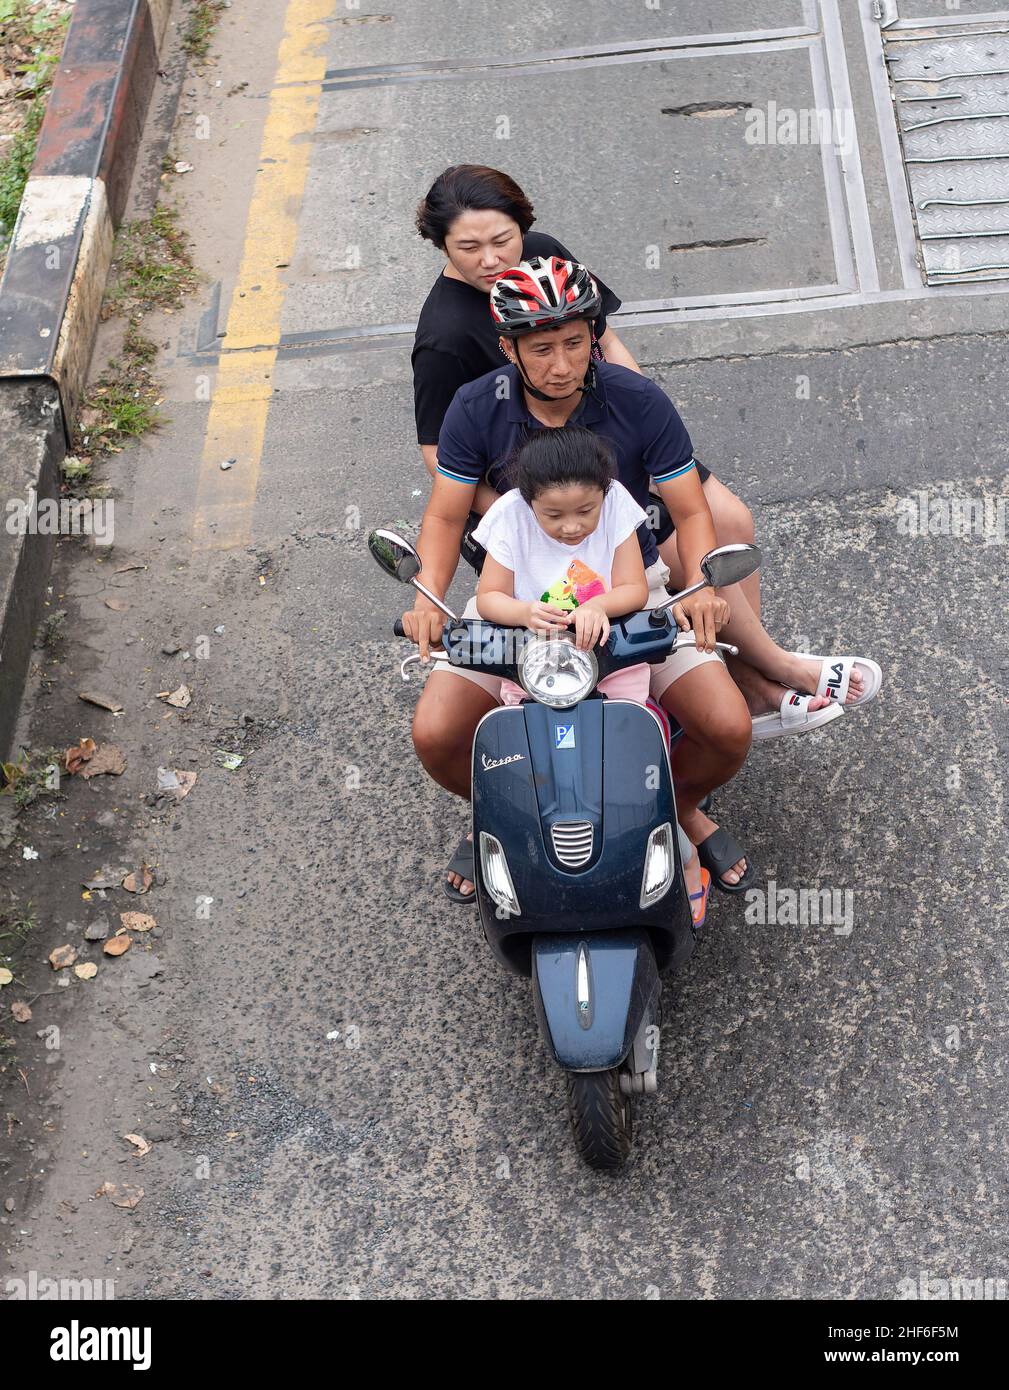 Les scooters Vespa sont populaires au Vietnam, et la société italienne a une usine dans le pays pour fabriquer des scooters pour le marché local et d'autres cou Banque D'Images